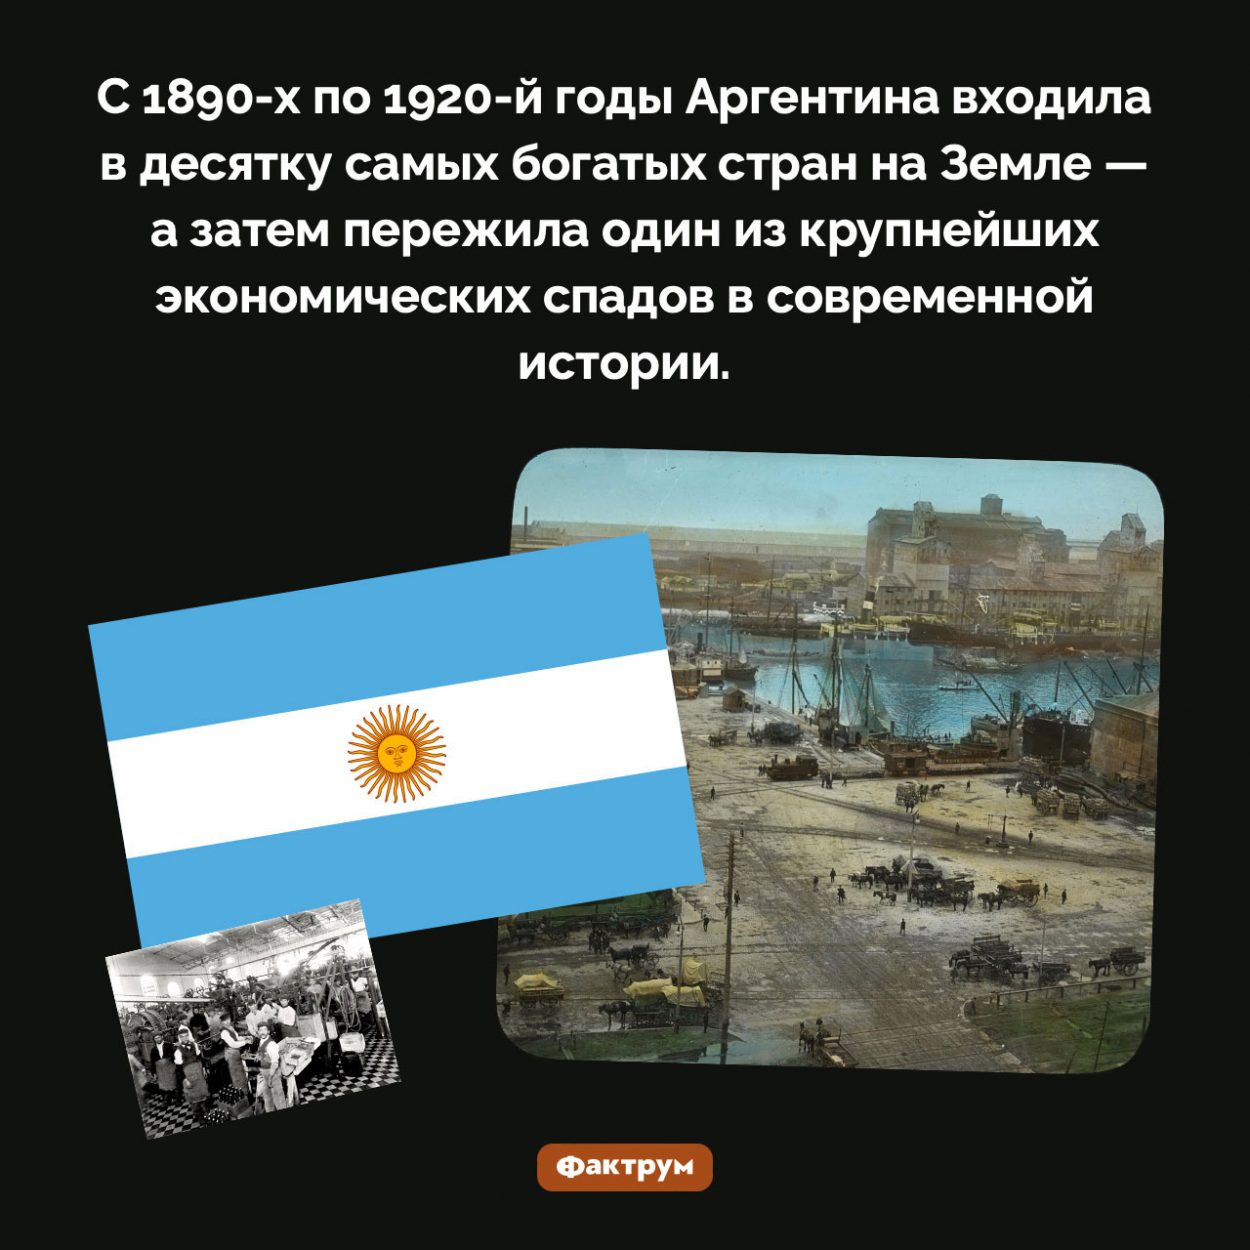 Аргентина была очень богатой страной. С 1890-х по 1920-й годы Аргентина входила в десятку самых богатых стран на Земле — а затем пережила один из крупнейших экономических спадов в современной истории.